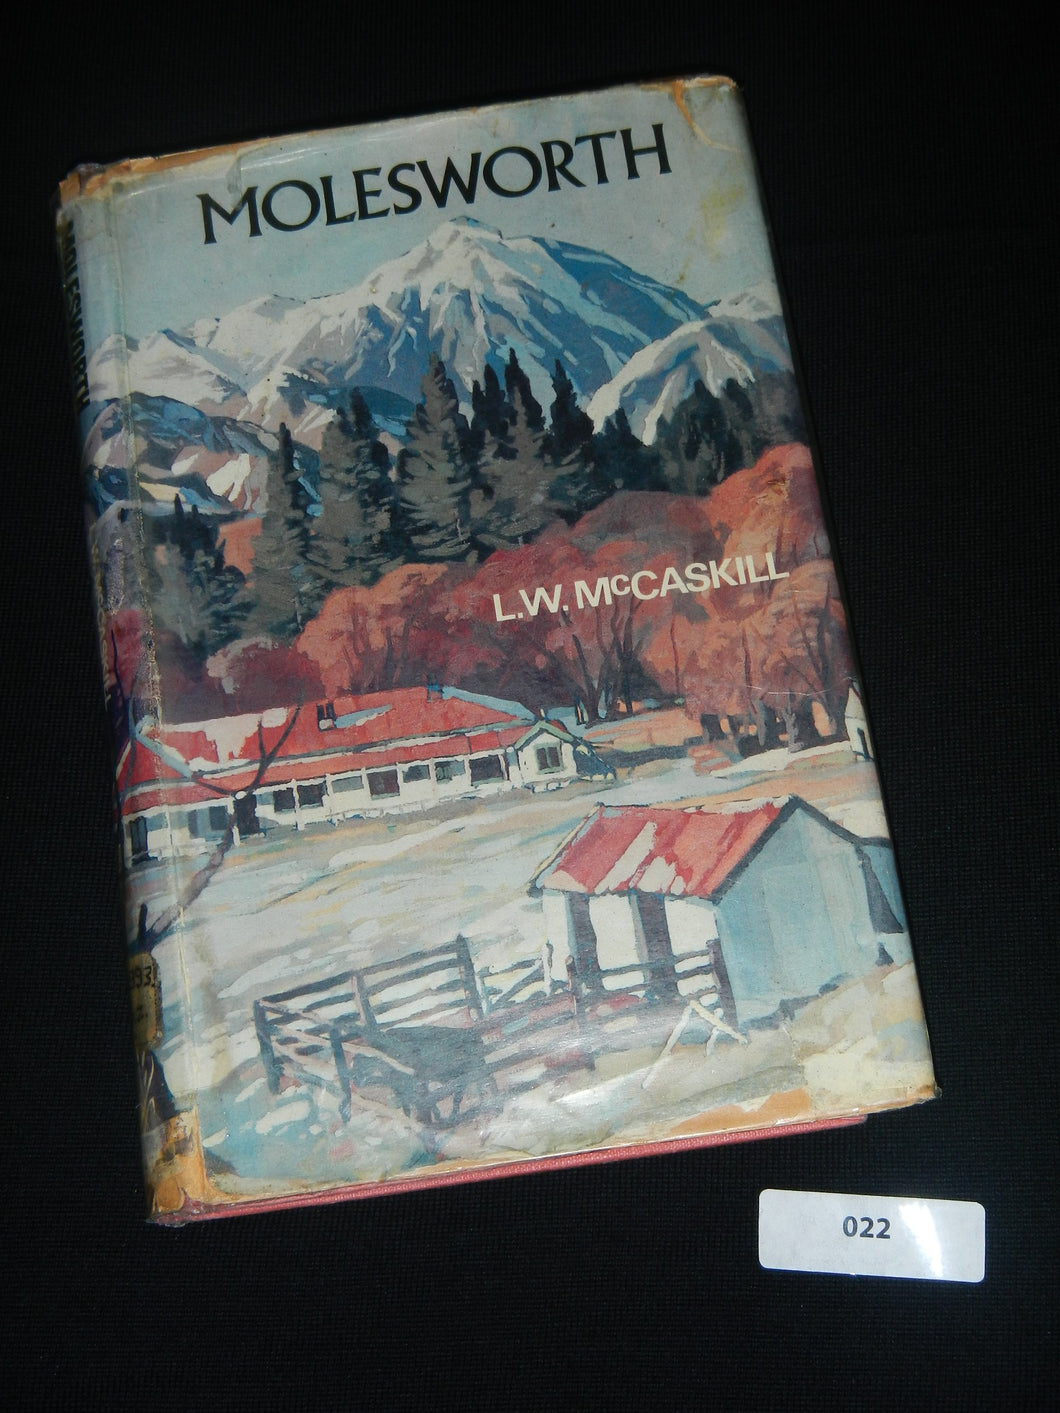 022 Molesworth by L.W. McCaskill